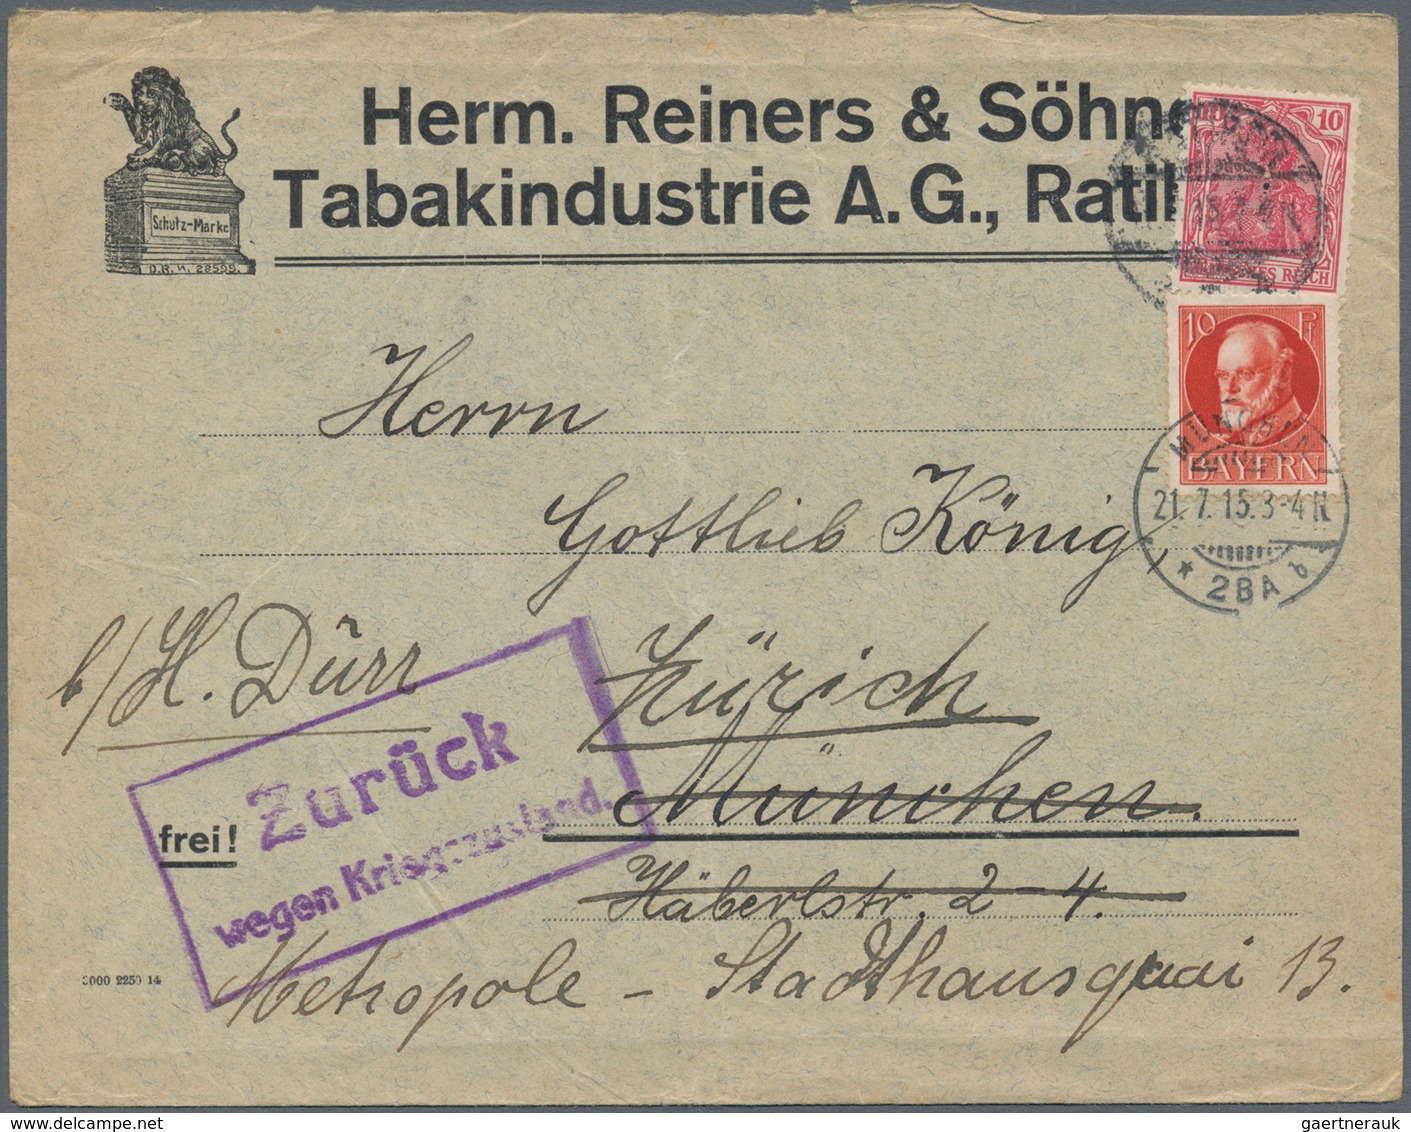 Bayern - Marken und Briefe: 1875-1920, toller Posten mit über 400 Briefen und Belegen, dabei Einschr